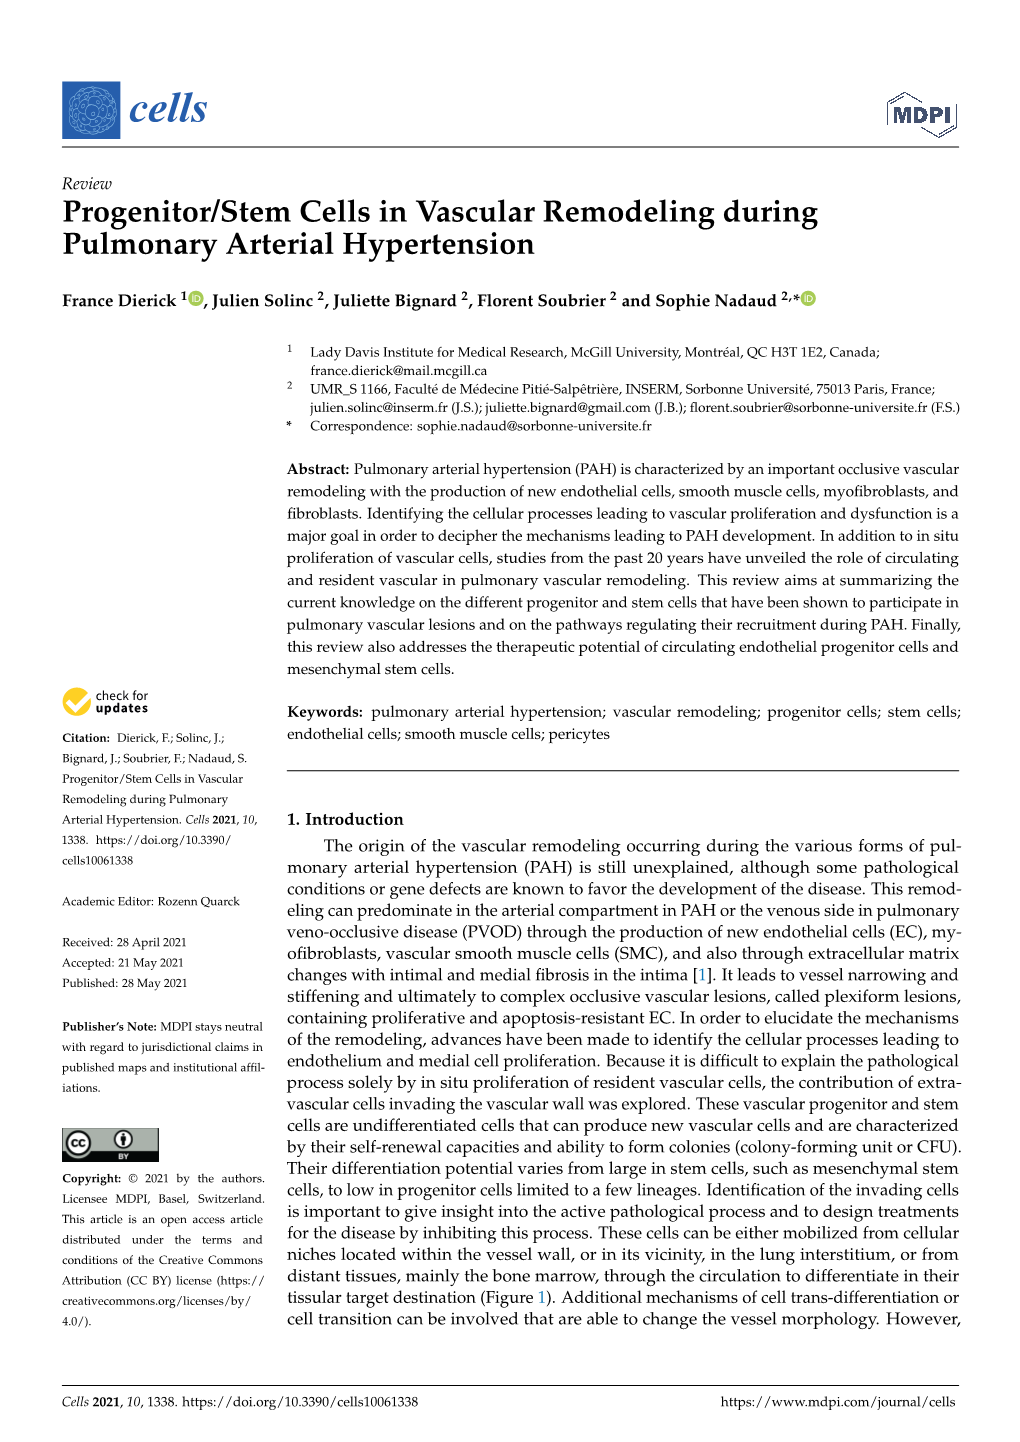 Progenitor/Stem Cells in Vascular Remodeling During Pulmonary Arterial Hypertension